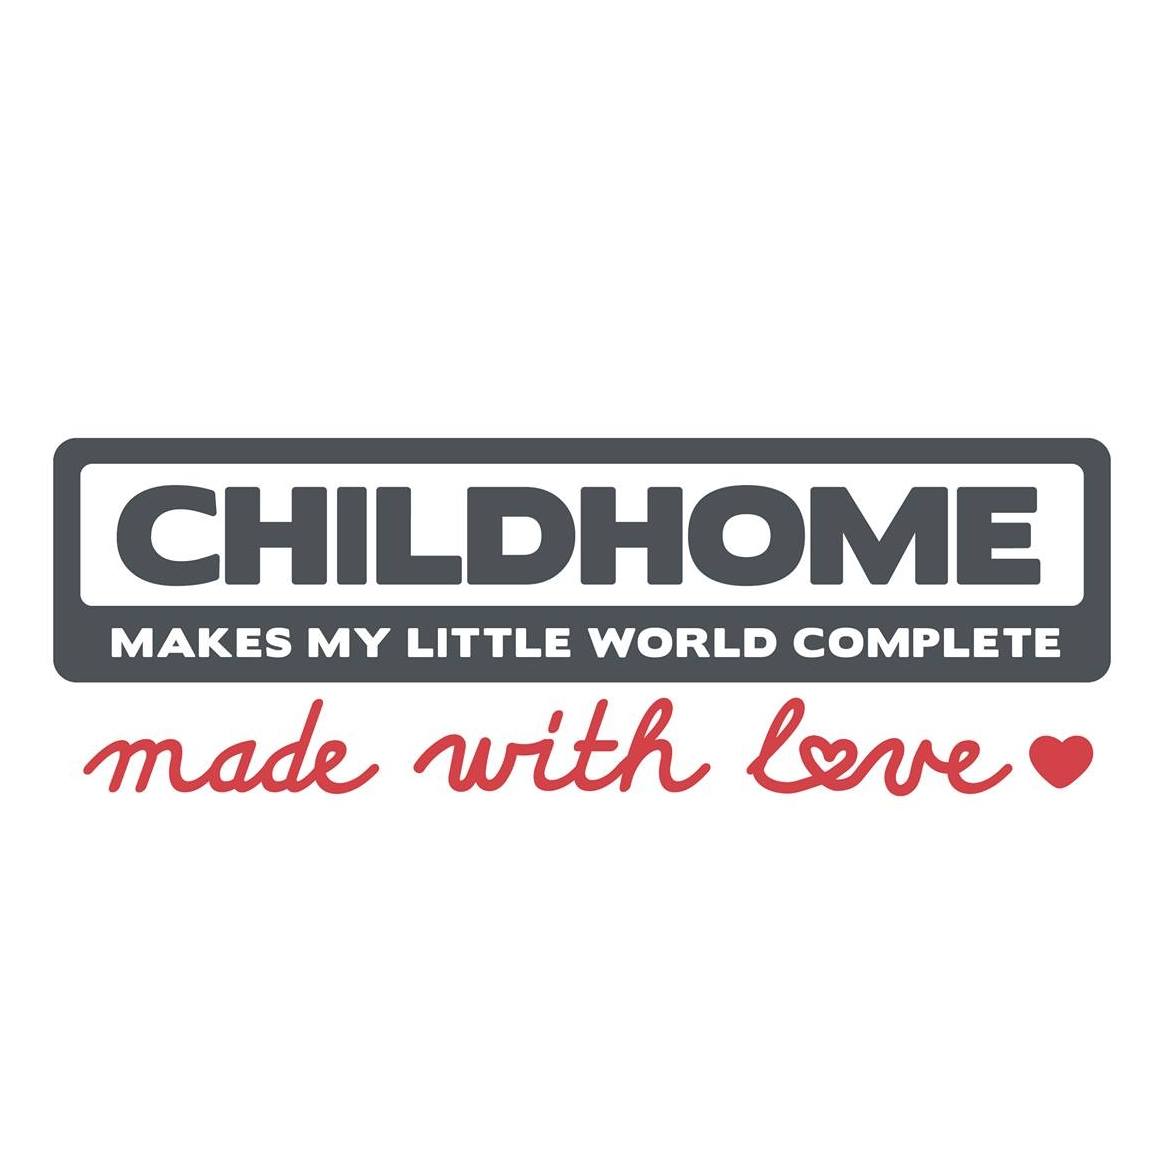 (c) Childhome.com